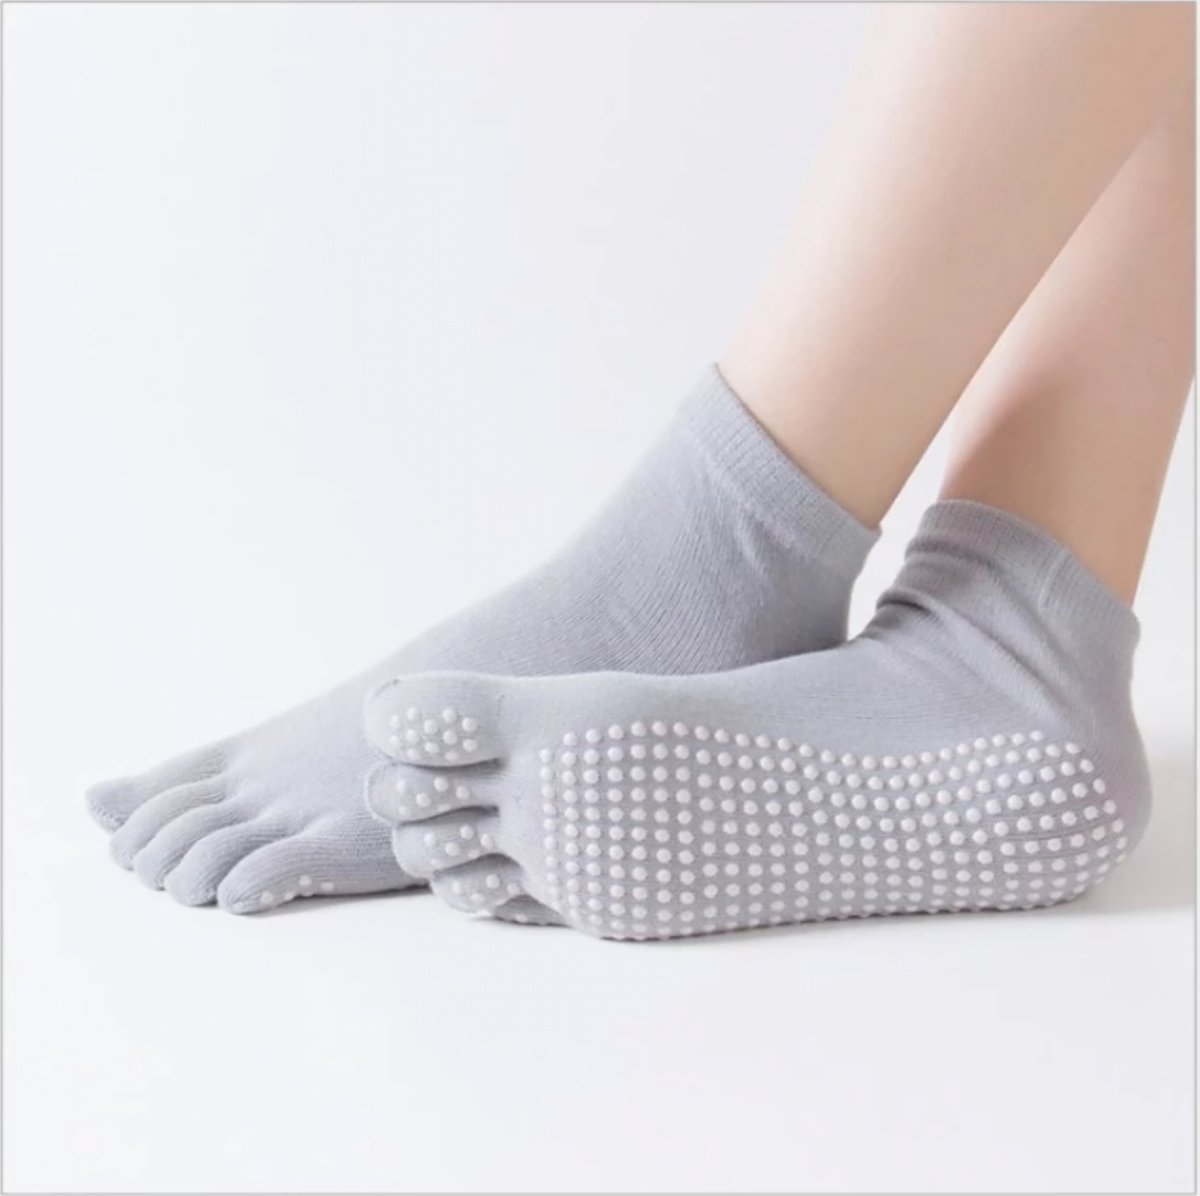 Yogasokken - Yoga sokken - Grijs - Maat 36-40 - Teensokken - Antislip - Pilatessokken - Sportsokken